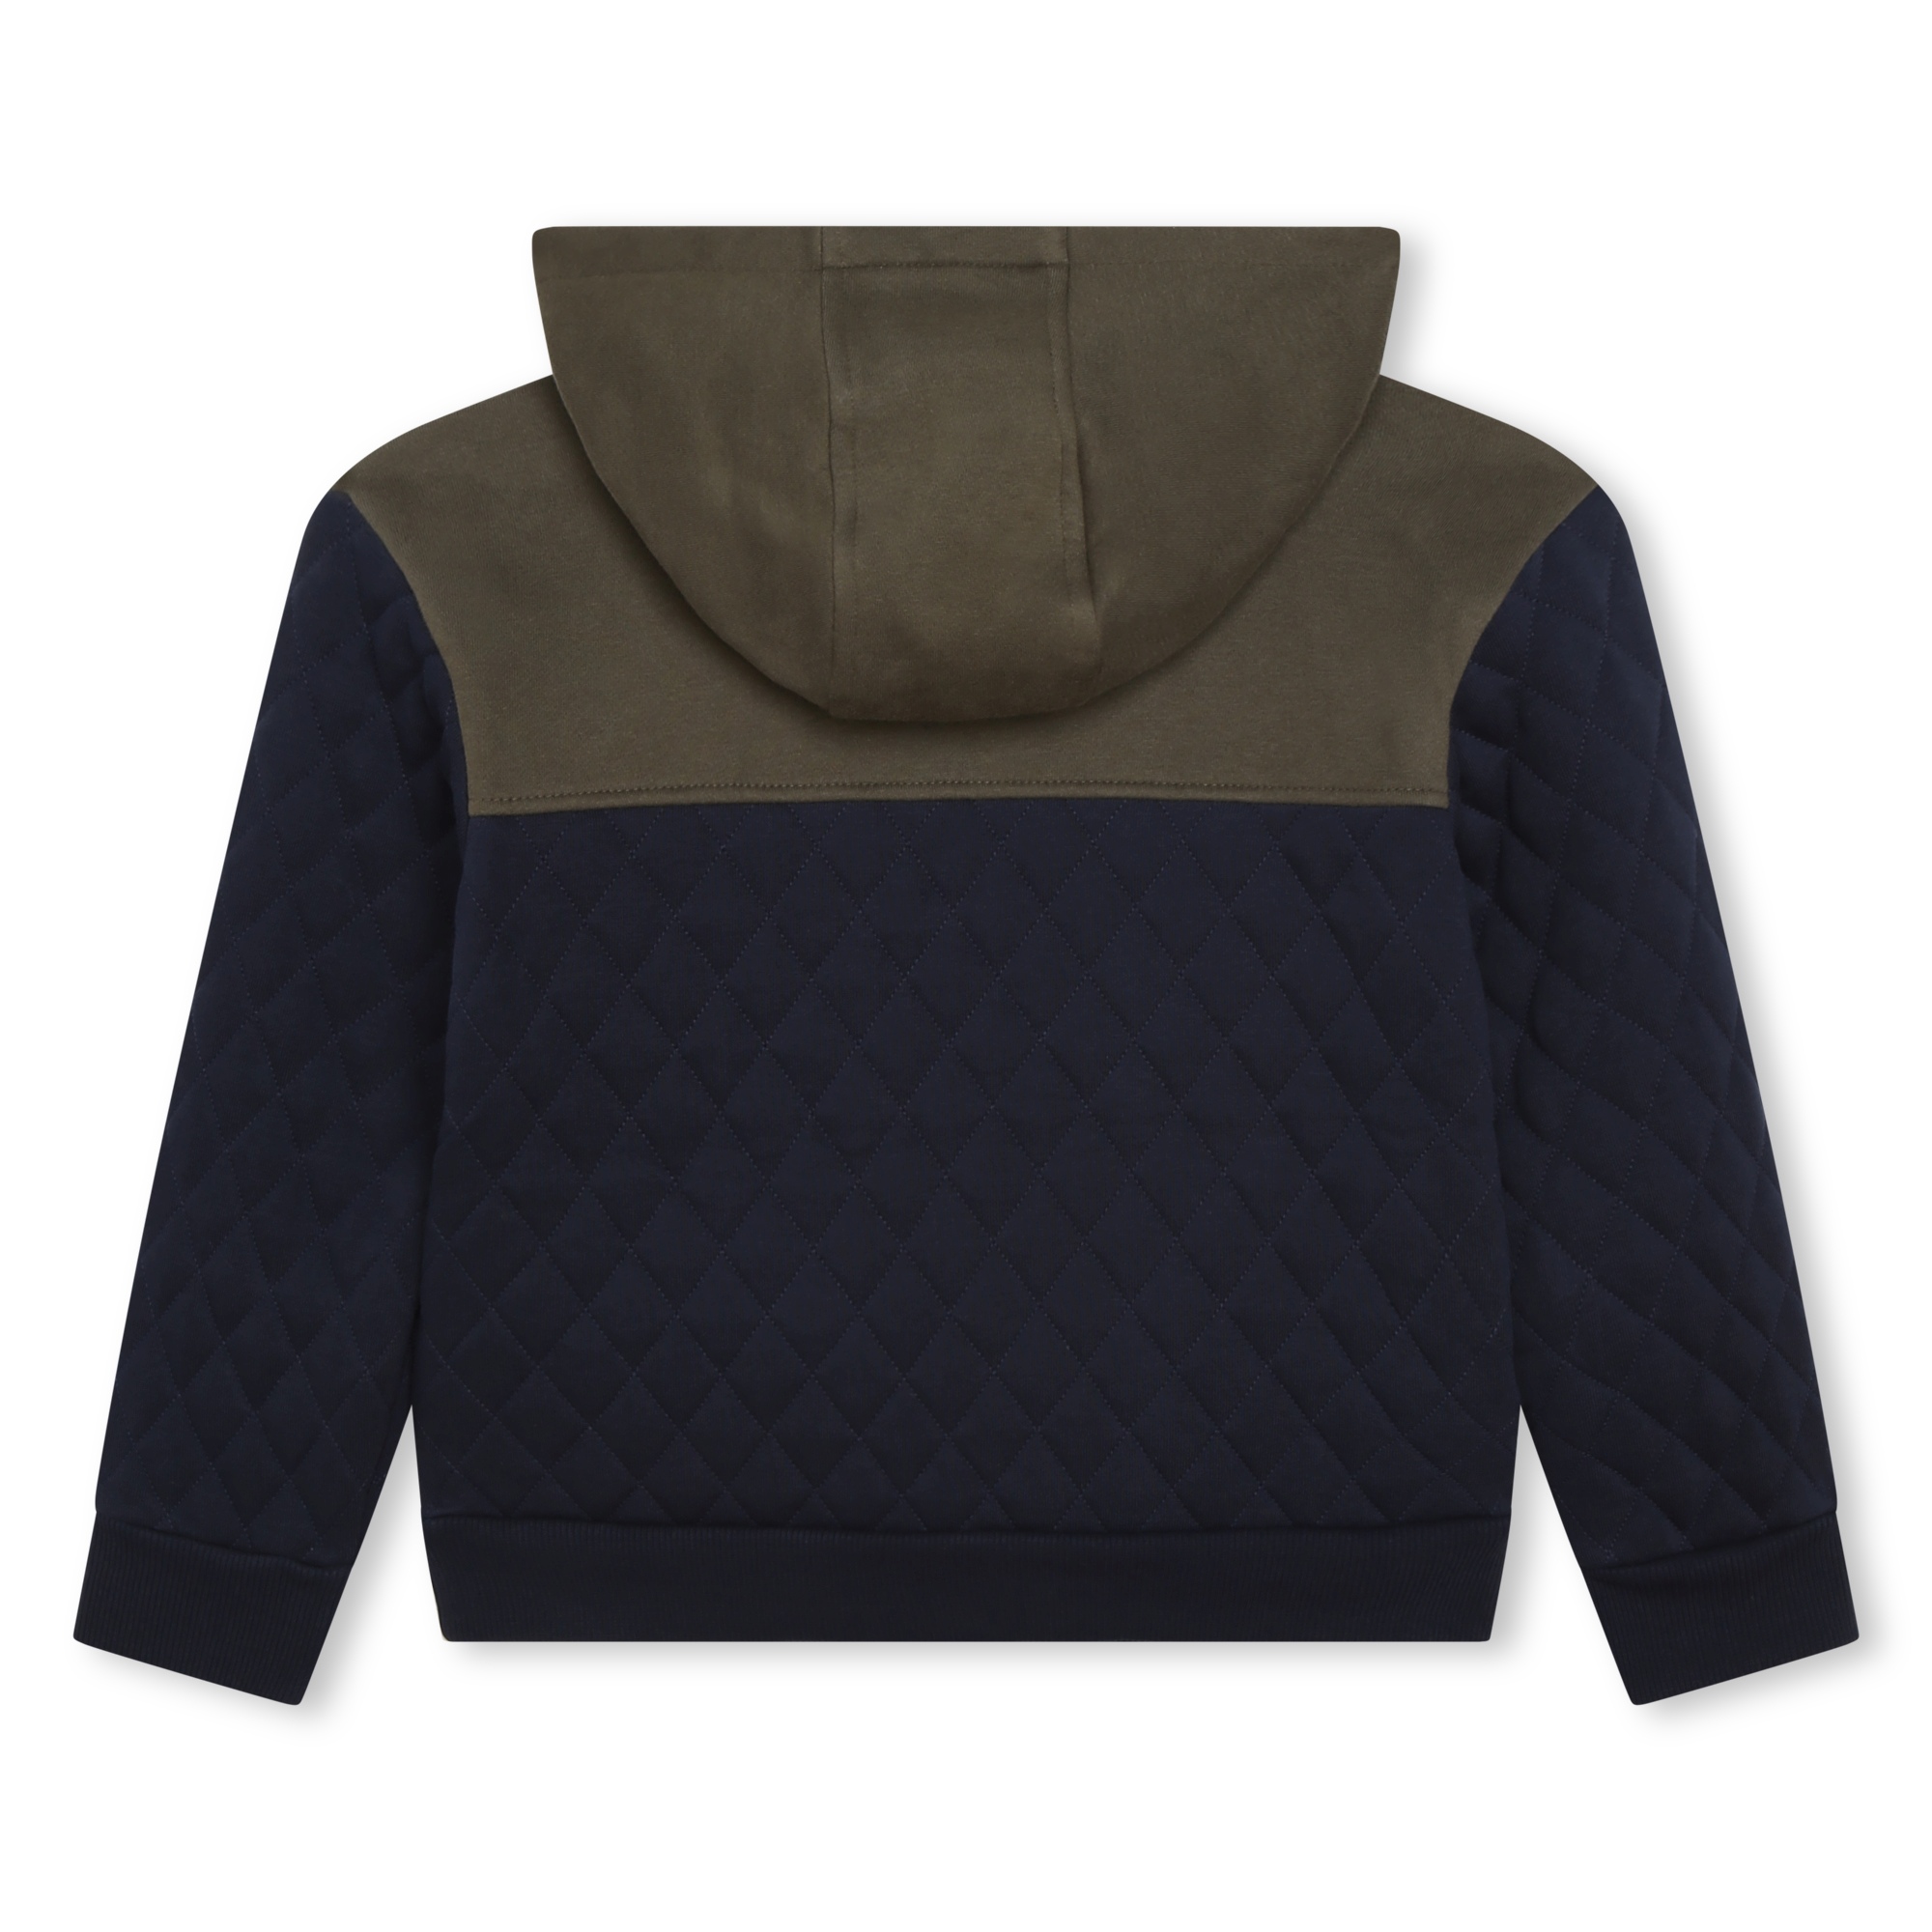 Kapuzen-Sweater mit Zip-Kragen TIMBERLAND Für JUNGE